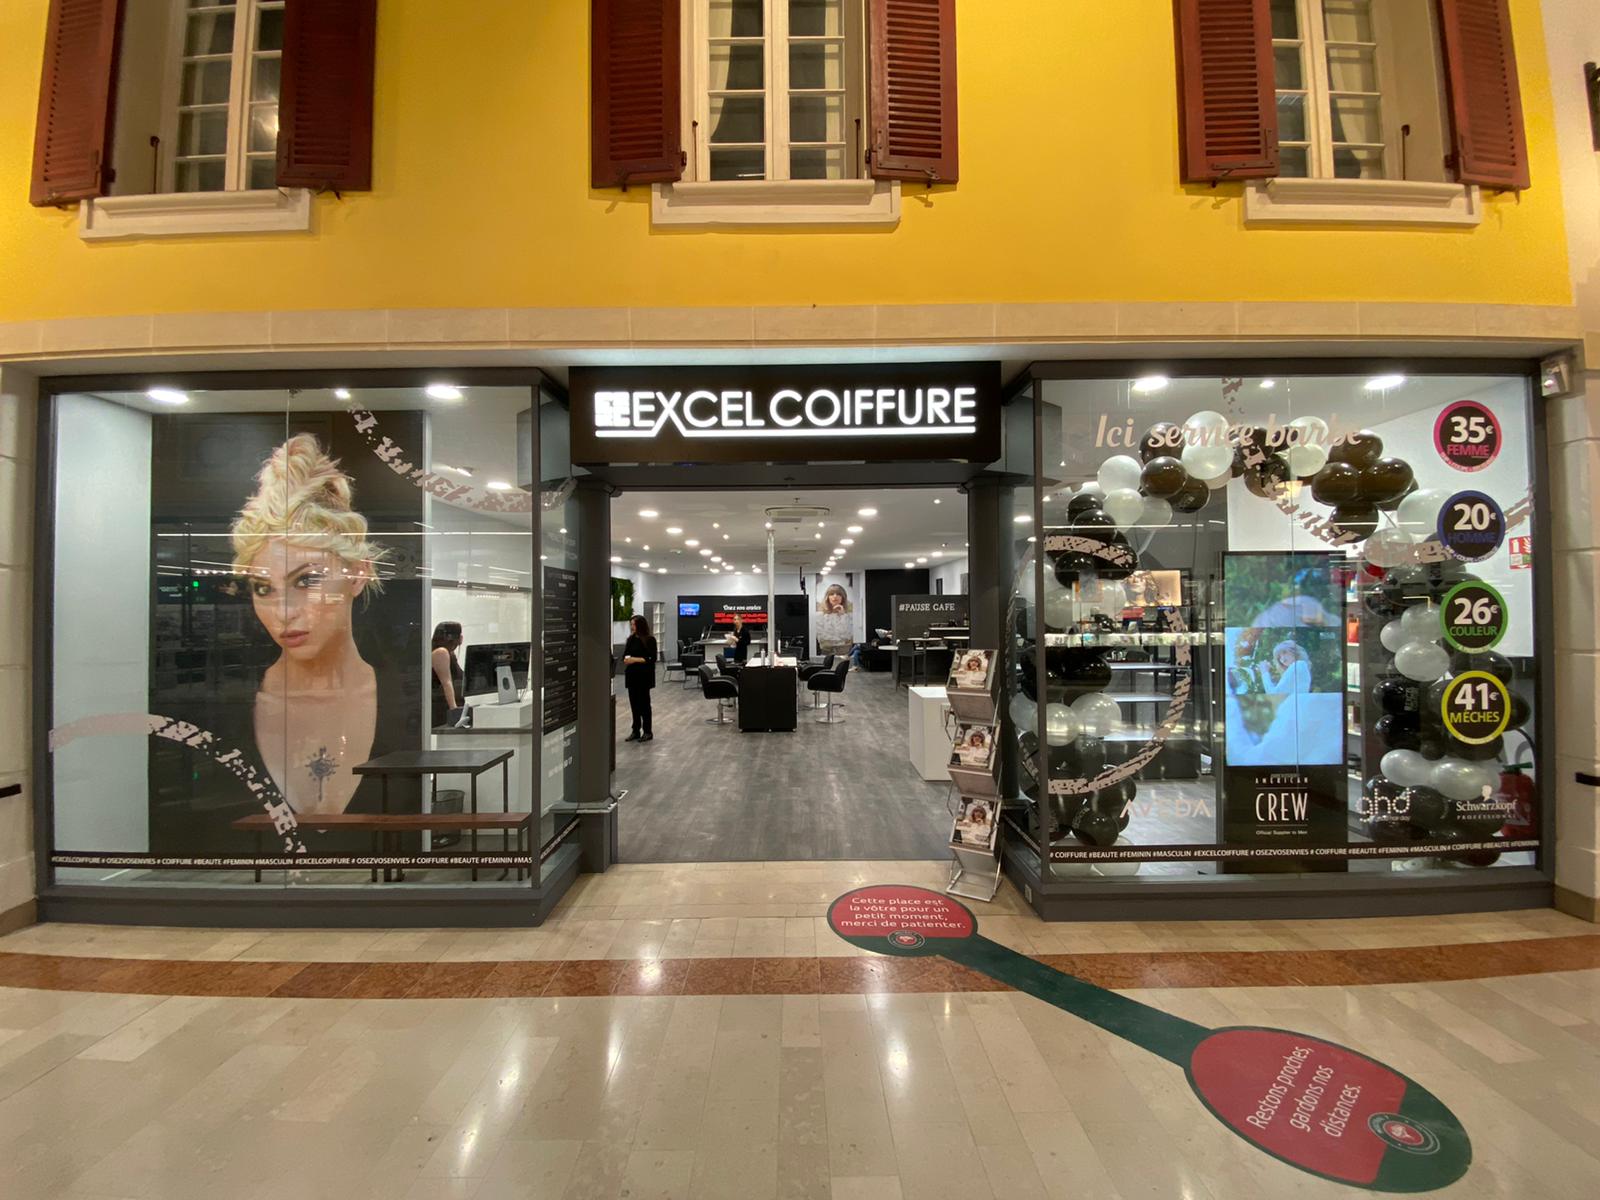 Salon Excel Coiffure Avignon